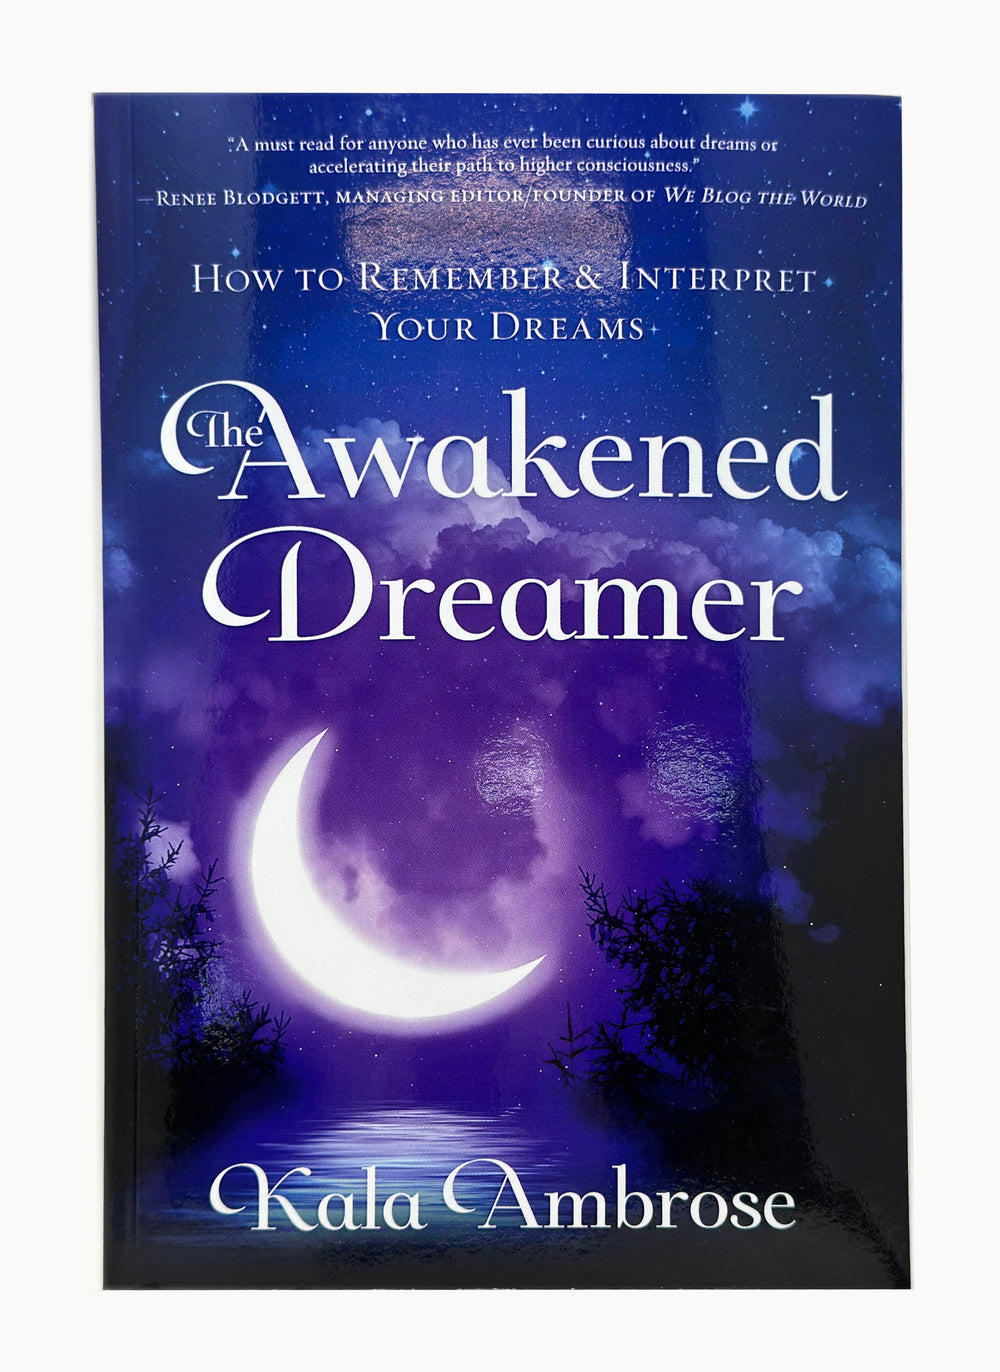 The Awakened Dreamer